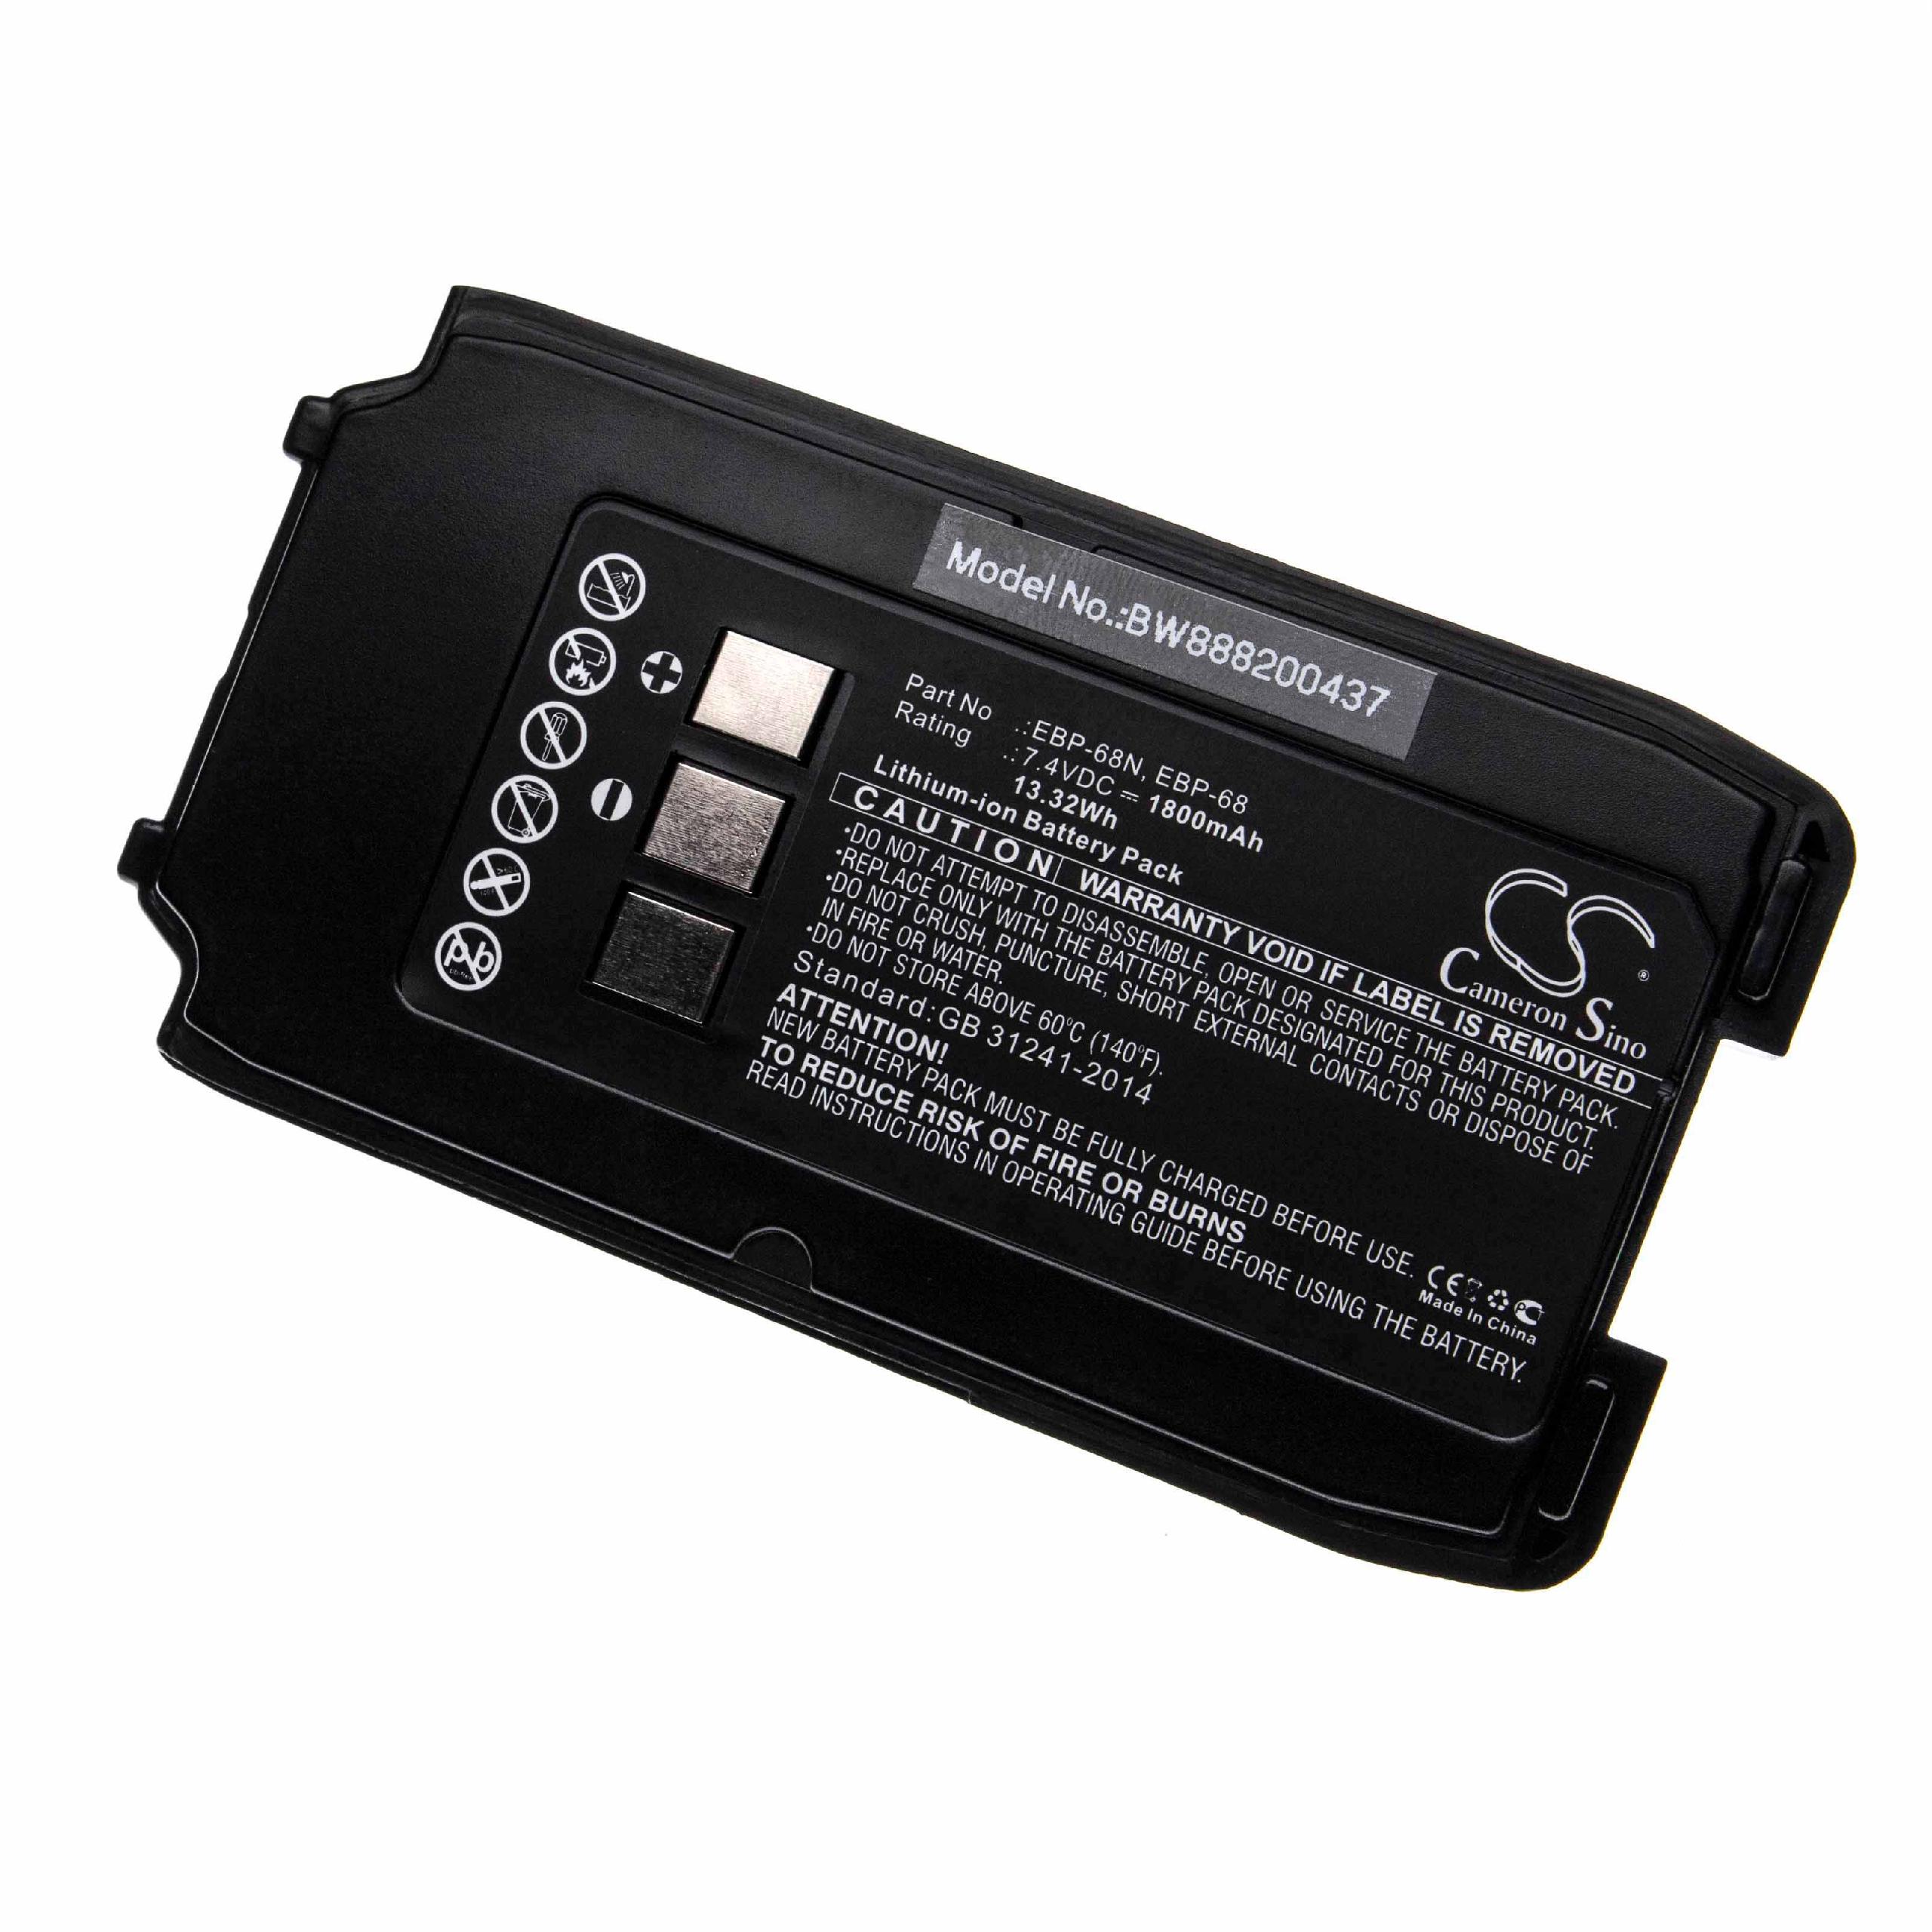 Batería reemplaza Alinco EBP-68, EBP-68N para radio, walkie-talkie Alinco - 1800 mAh 7,4 V Li-Ion con clip